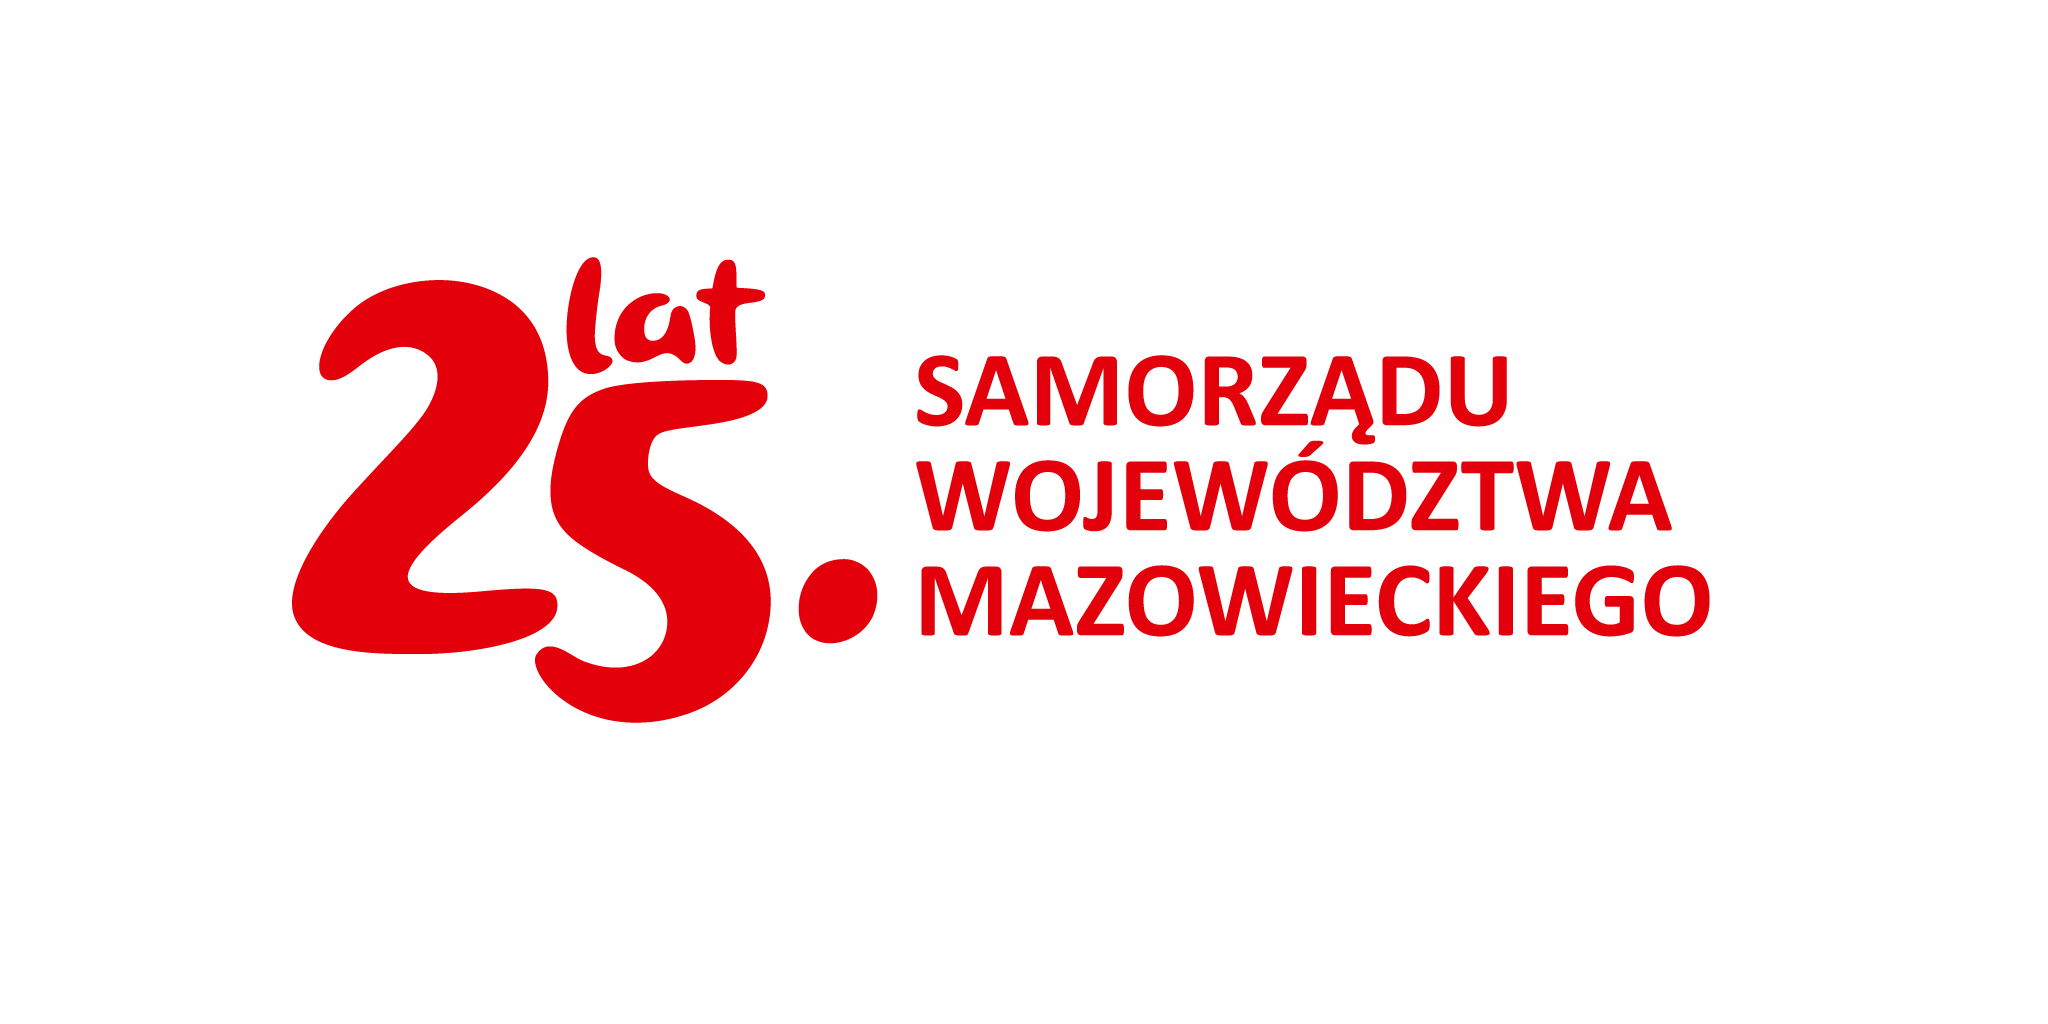 Informacja o konsultacjach społecznych projektu programu ochrony środowiska przed hałasem dla obszaru województwa mazowieckiego i zaproszenie do udziału w spotkaniu konsultacyjnym